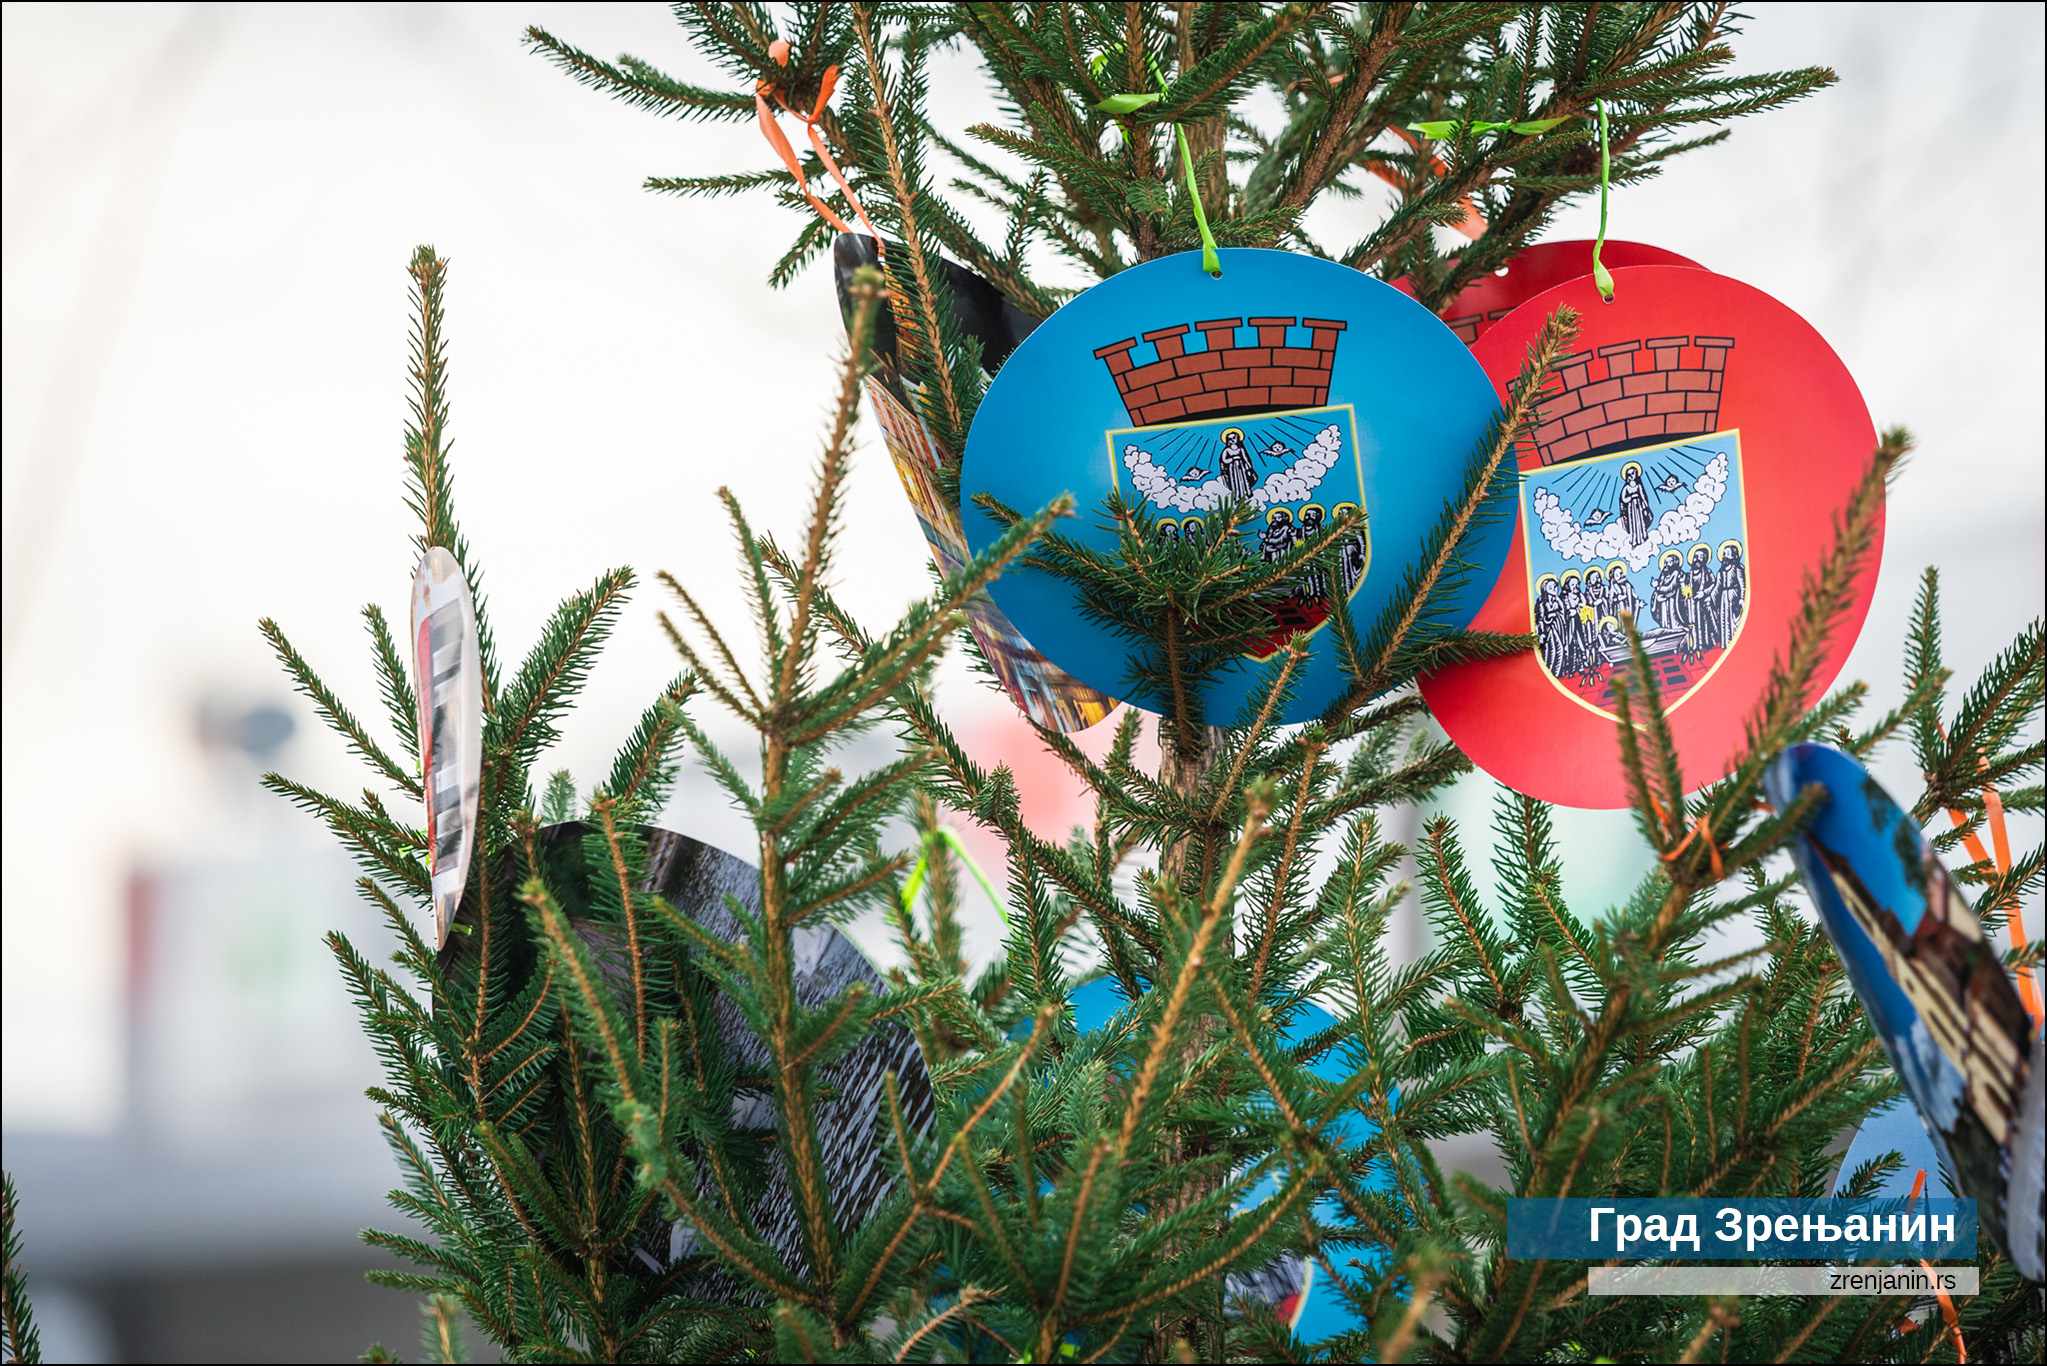 Grad Zrenjanin u humanitarnoj akciji ''Avivov izbor za najlepšu novogodišnju jelku Zrenjanina''